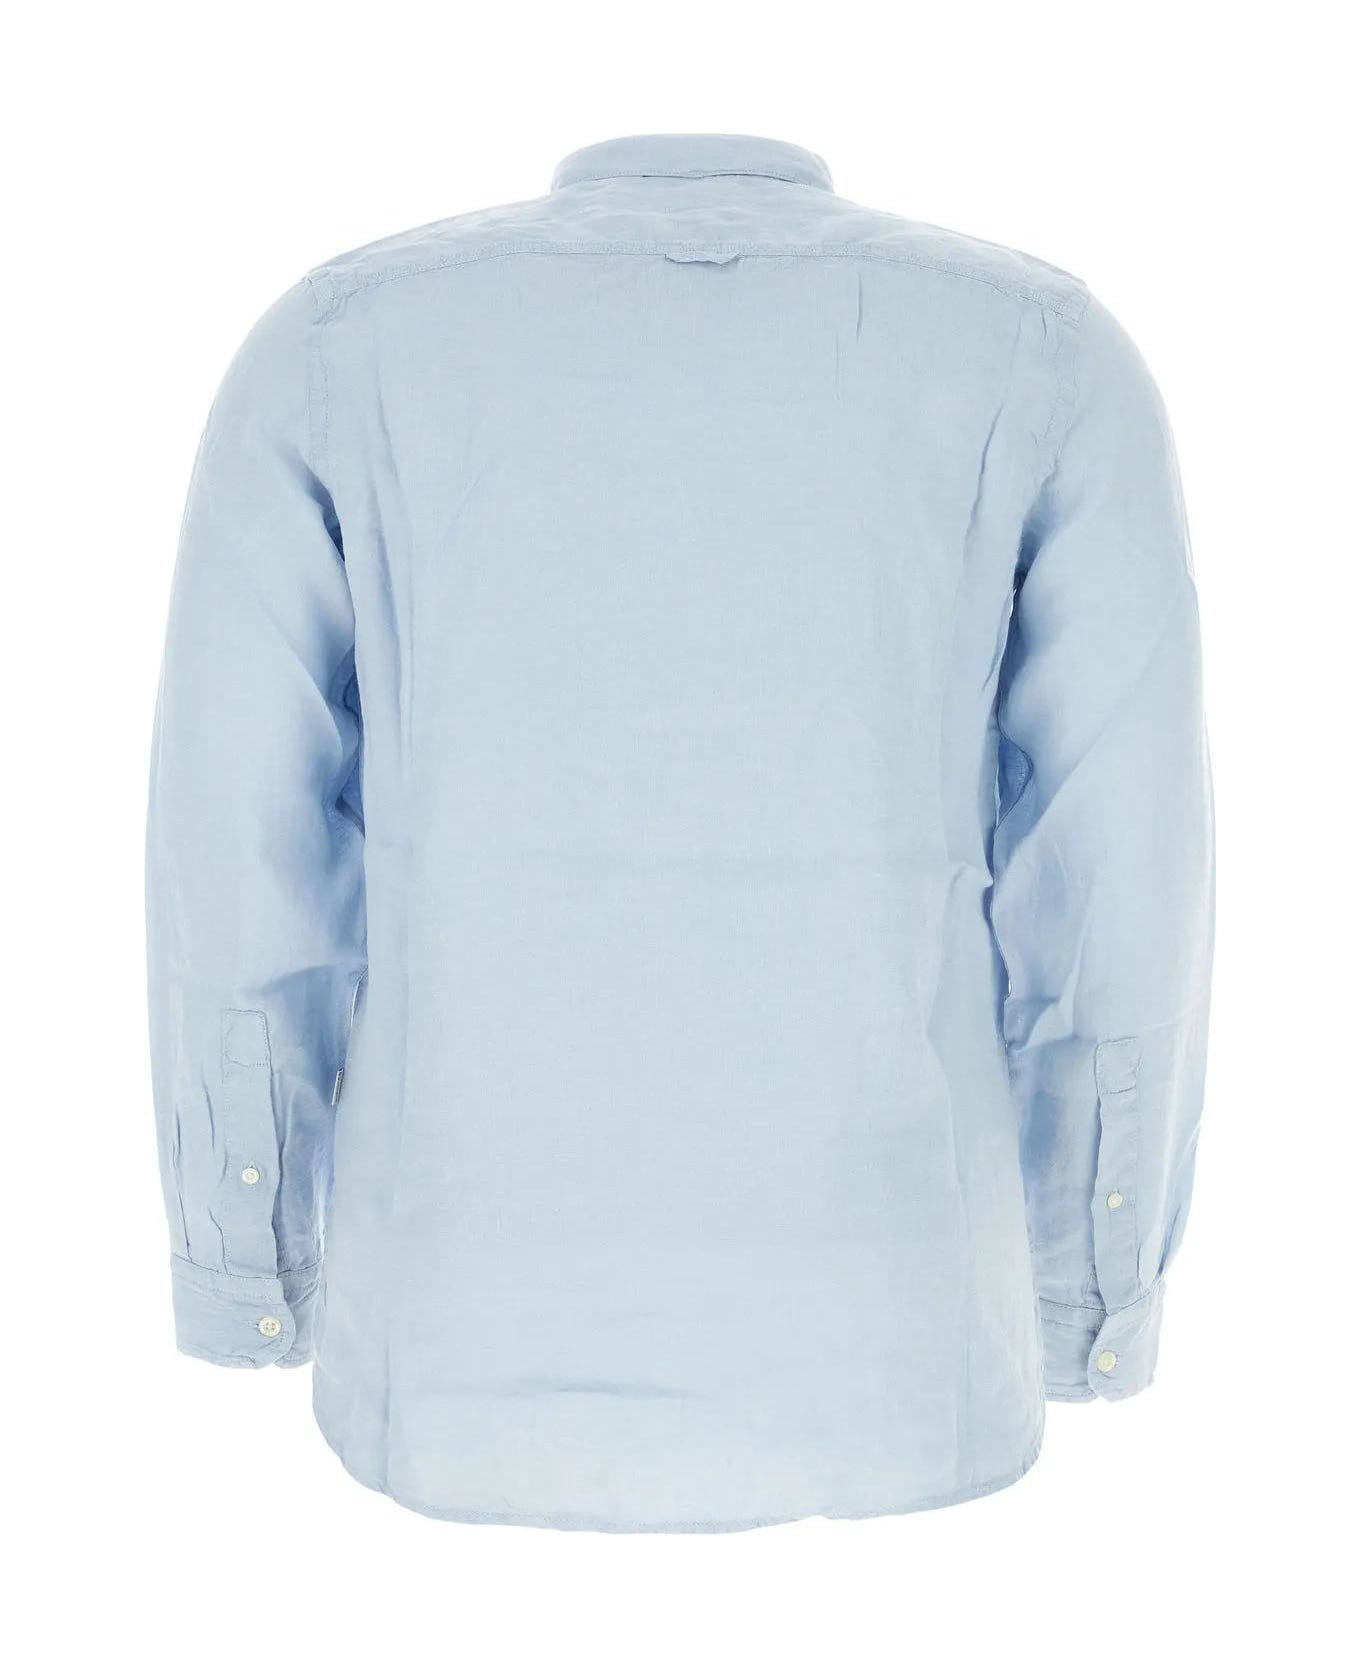 Woolrich Light-blue Linen Shirt - Pale Indigo